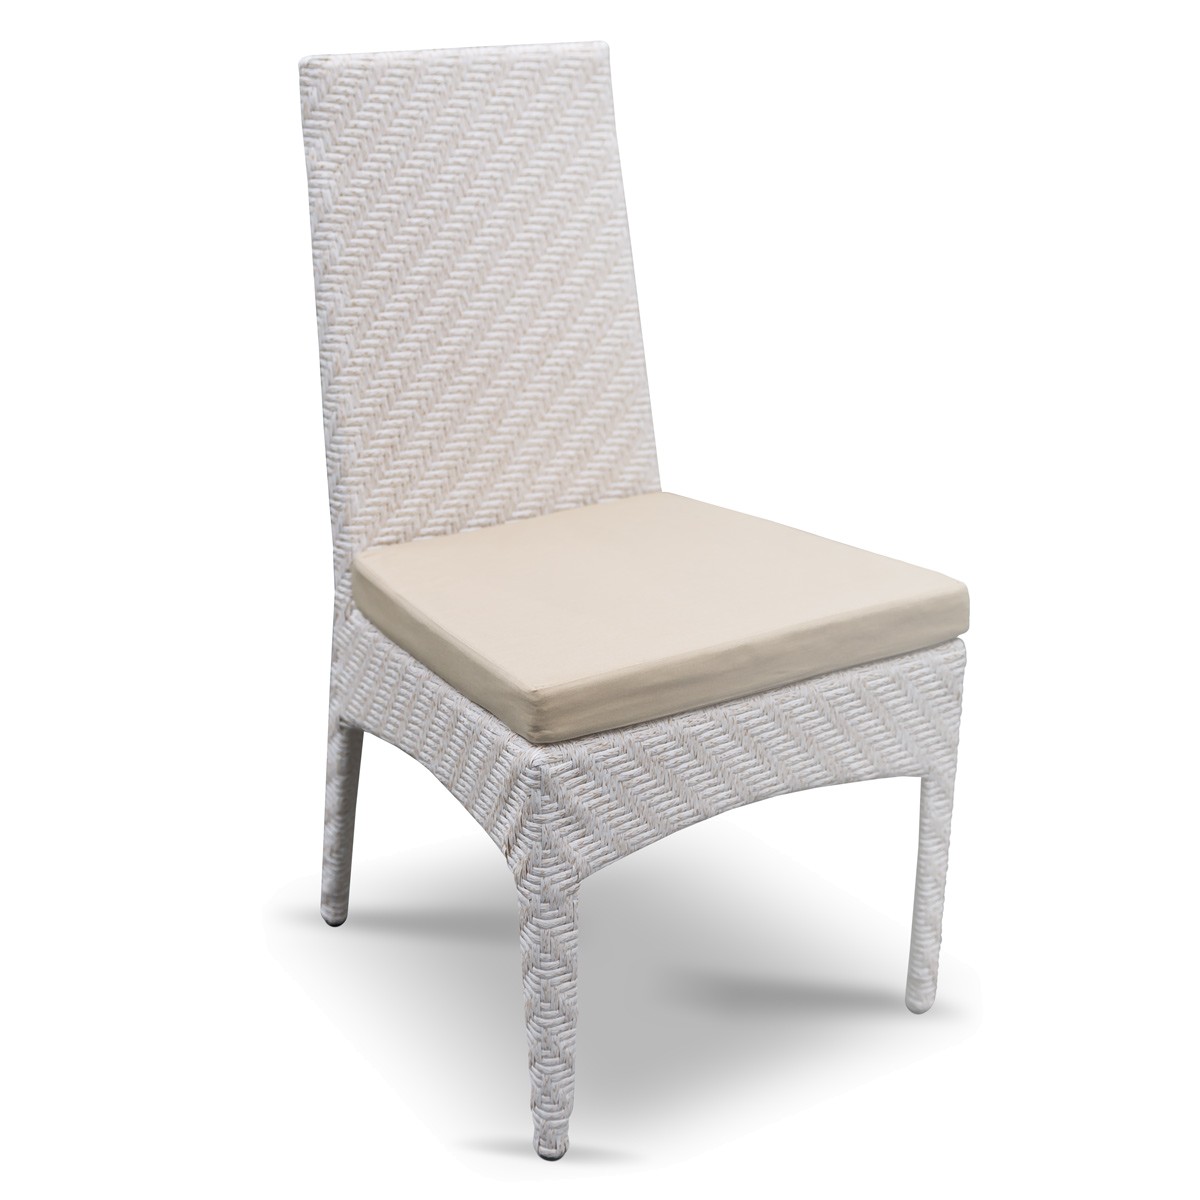 стул "Амберес", вид спереди, белый, беж. подушка